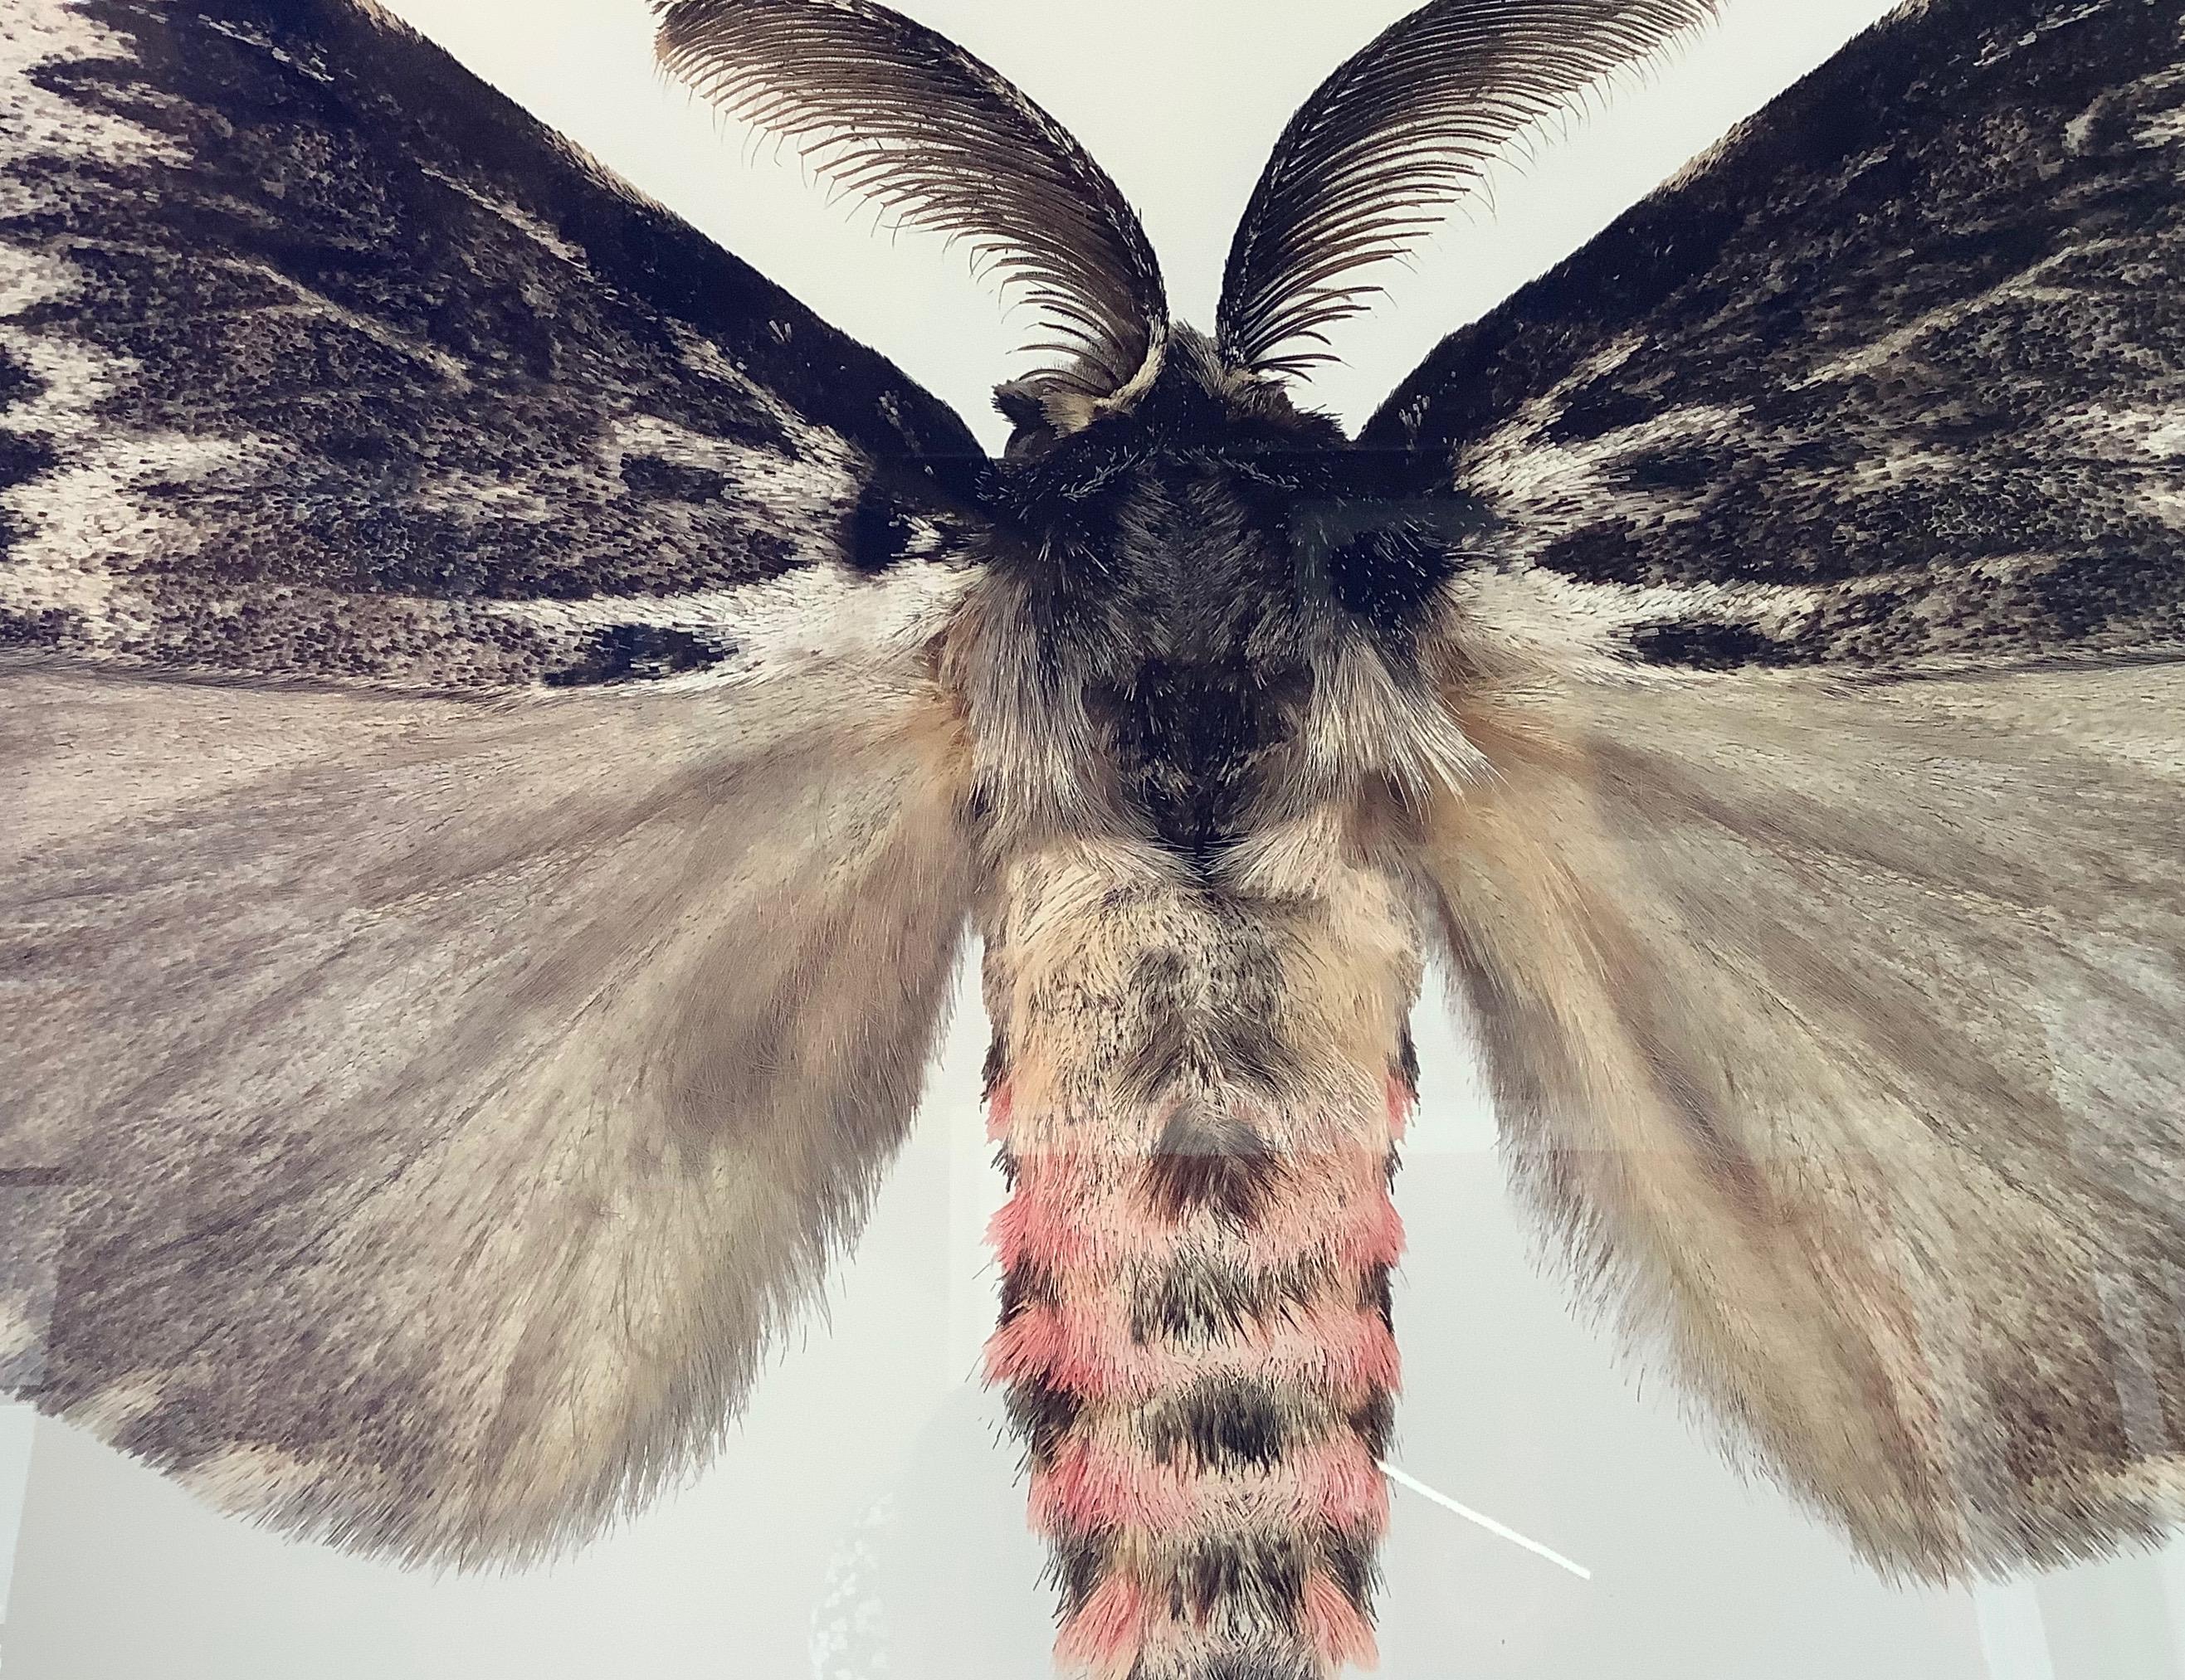 Lymantria-Exemplare, Naturfotografie mit rosa und braunem Moth auf weiem Hintergrund (Zeitgenössisch), Photograph, von Joseph Scheer